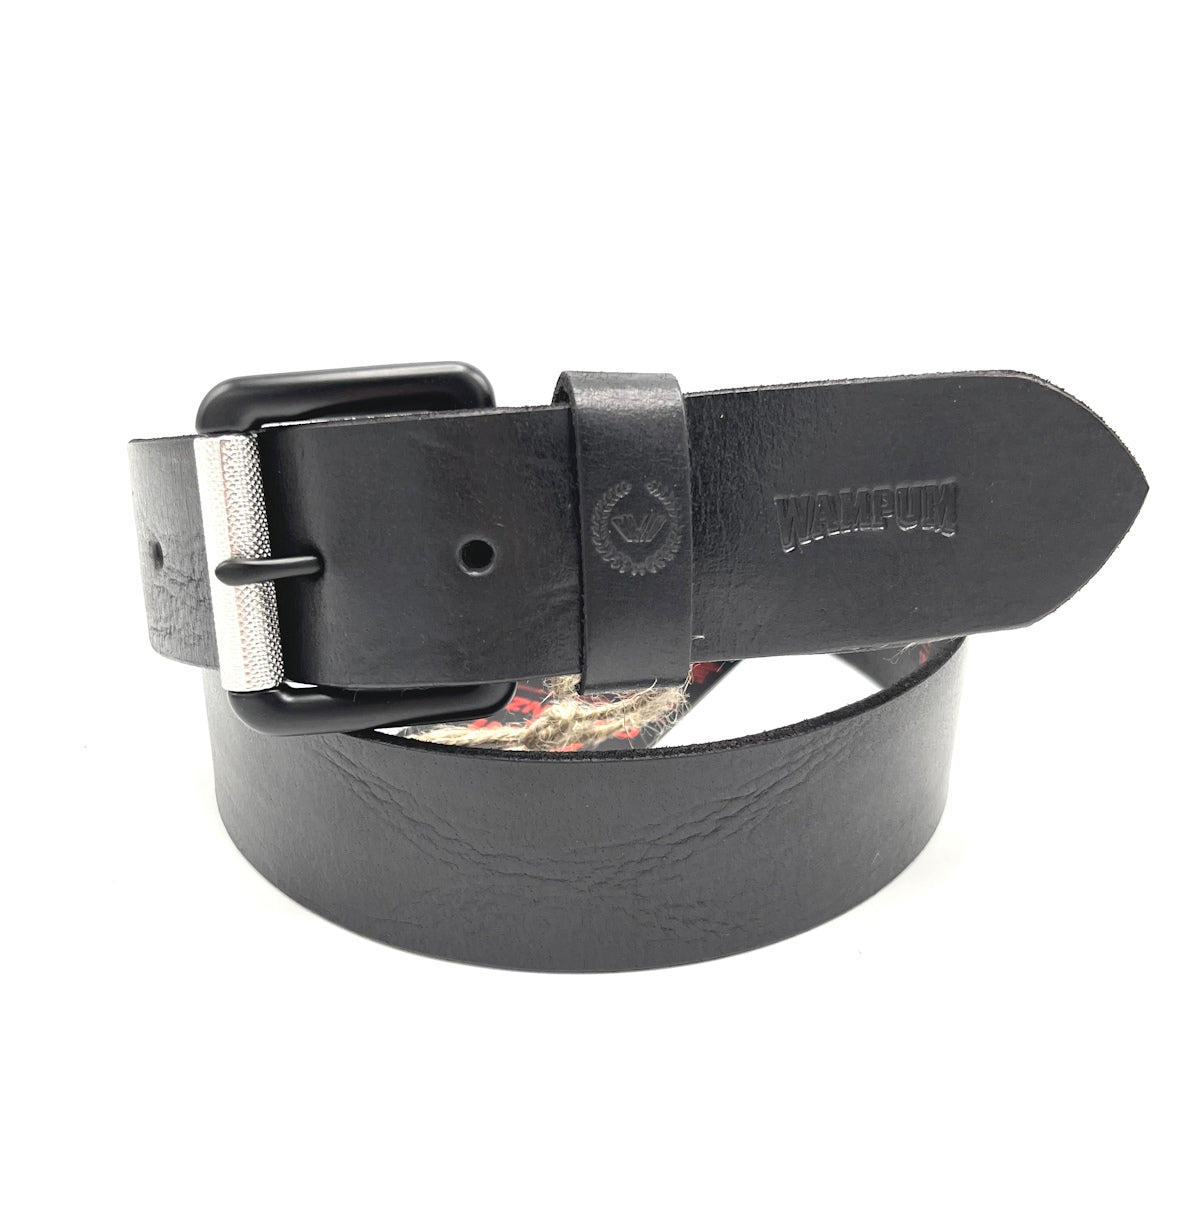 Genuine leather belt, Brand Wampum, art. IDK507/40